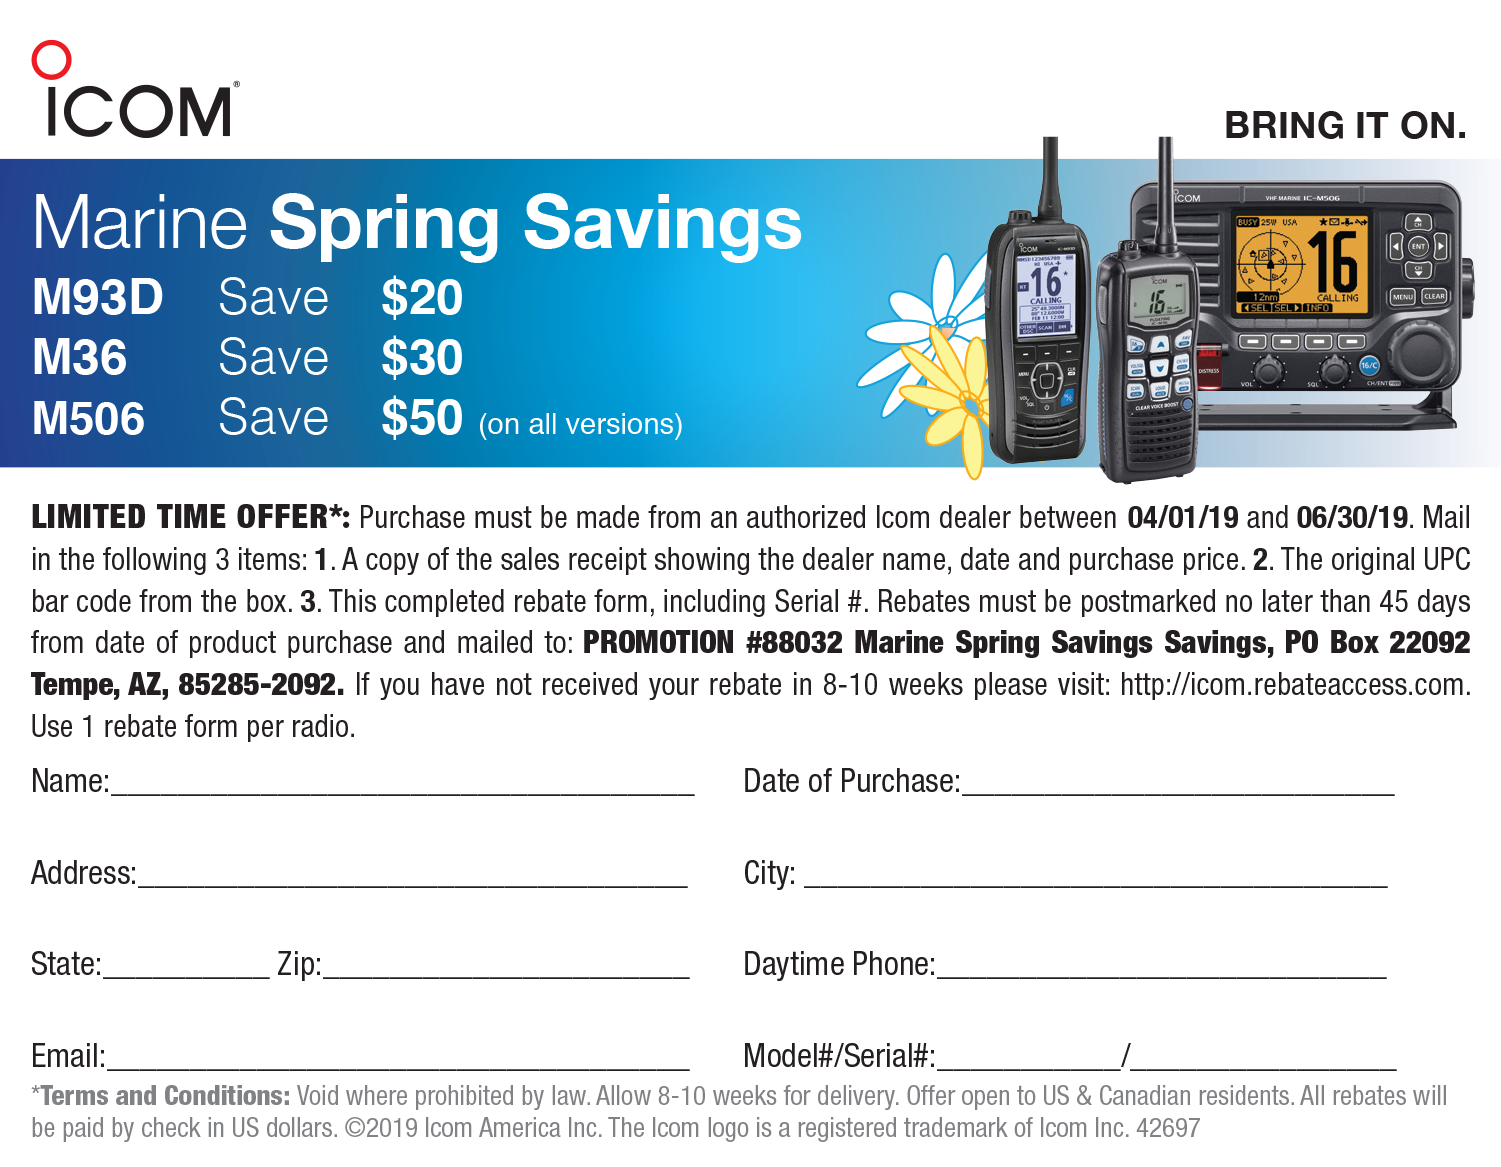 icom-marine-spring-savings-rebate-2019-radioworld